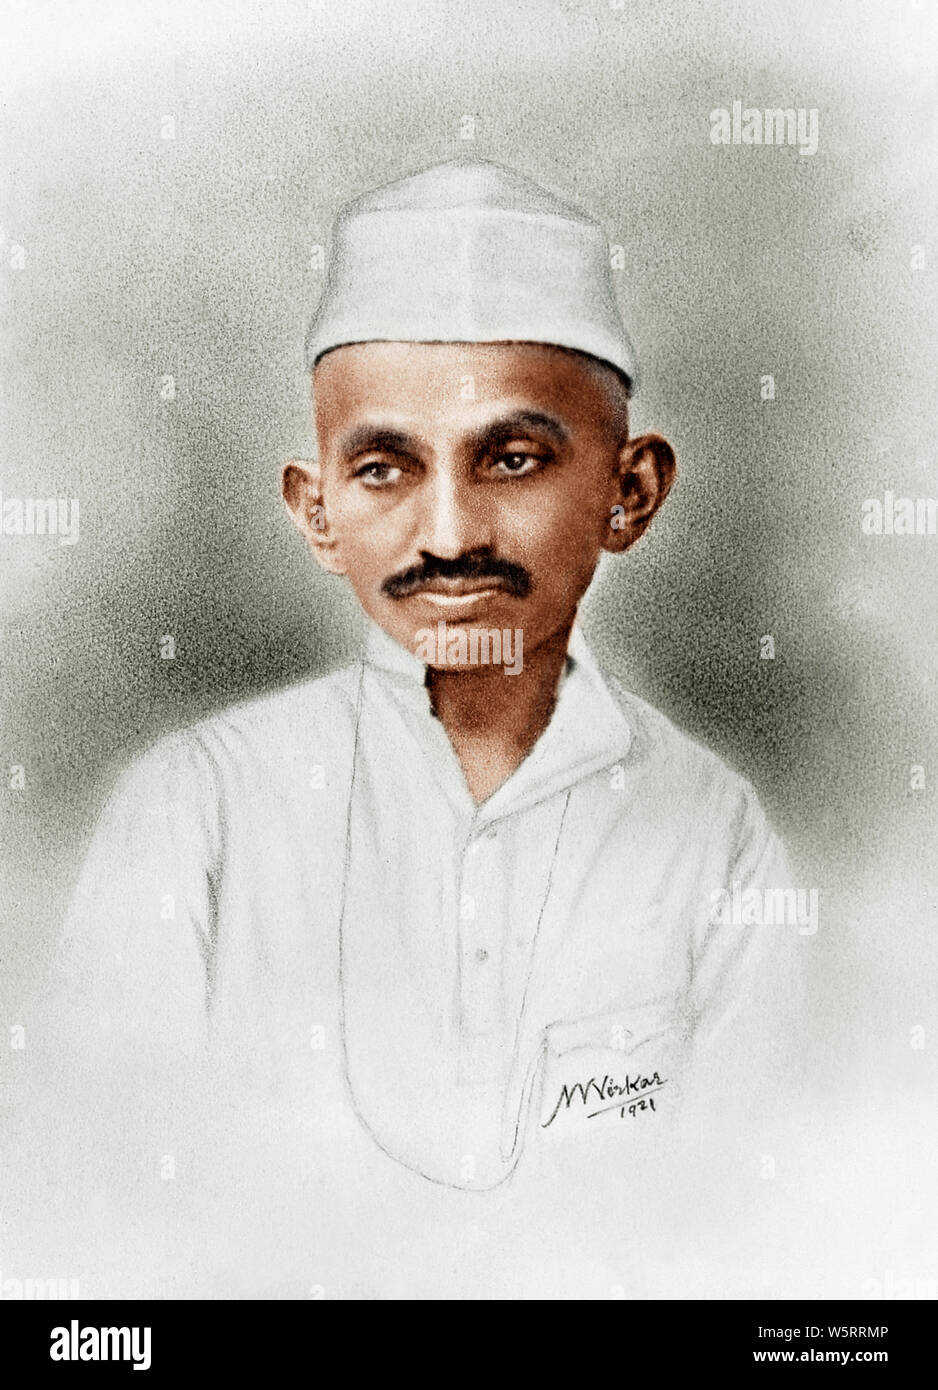 Alte vintage Foto von Mahatma Gandhi Indien Asien Juni 1921 Stockfoto